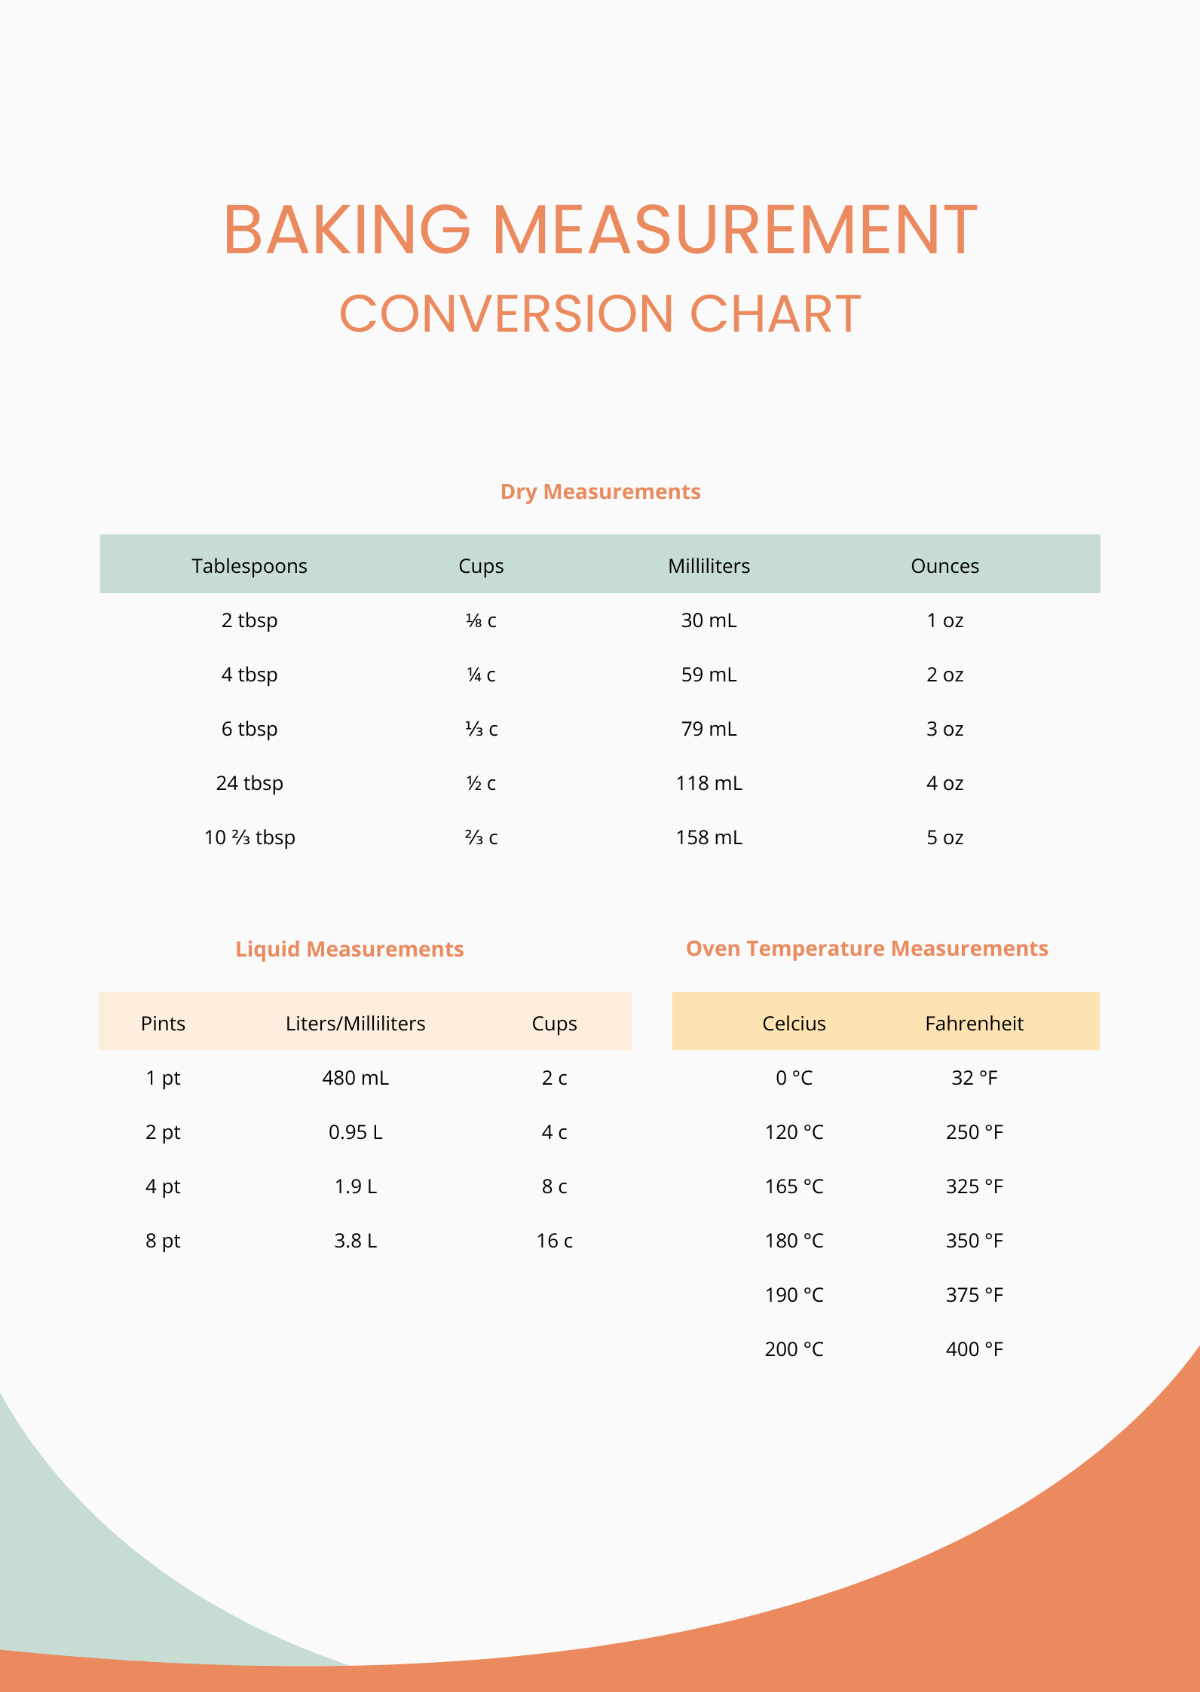 Baking Measurement Conversion Chart Template